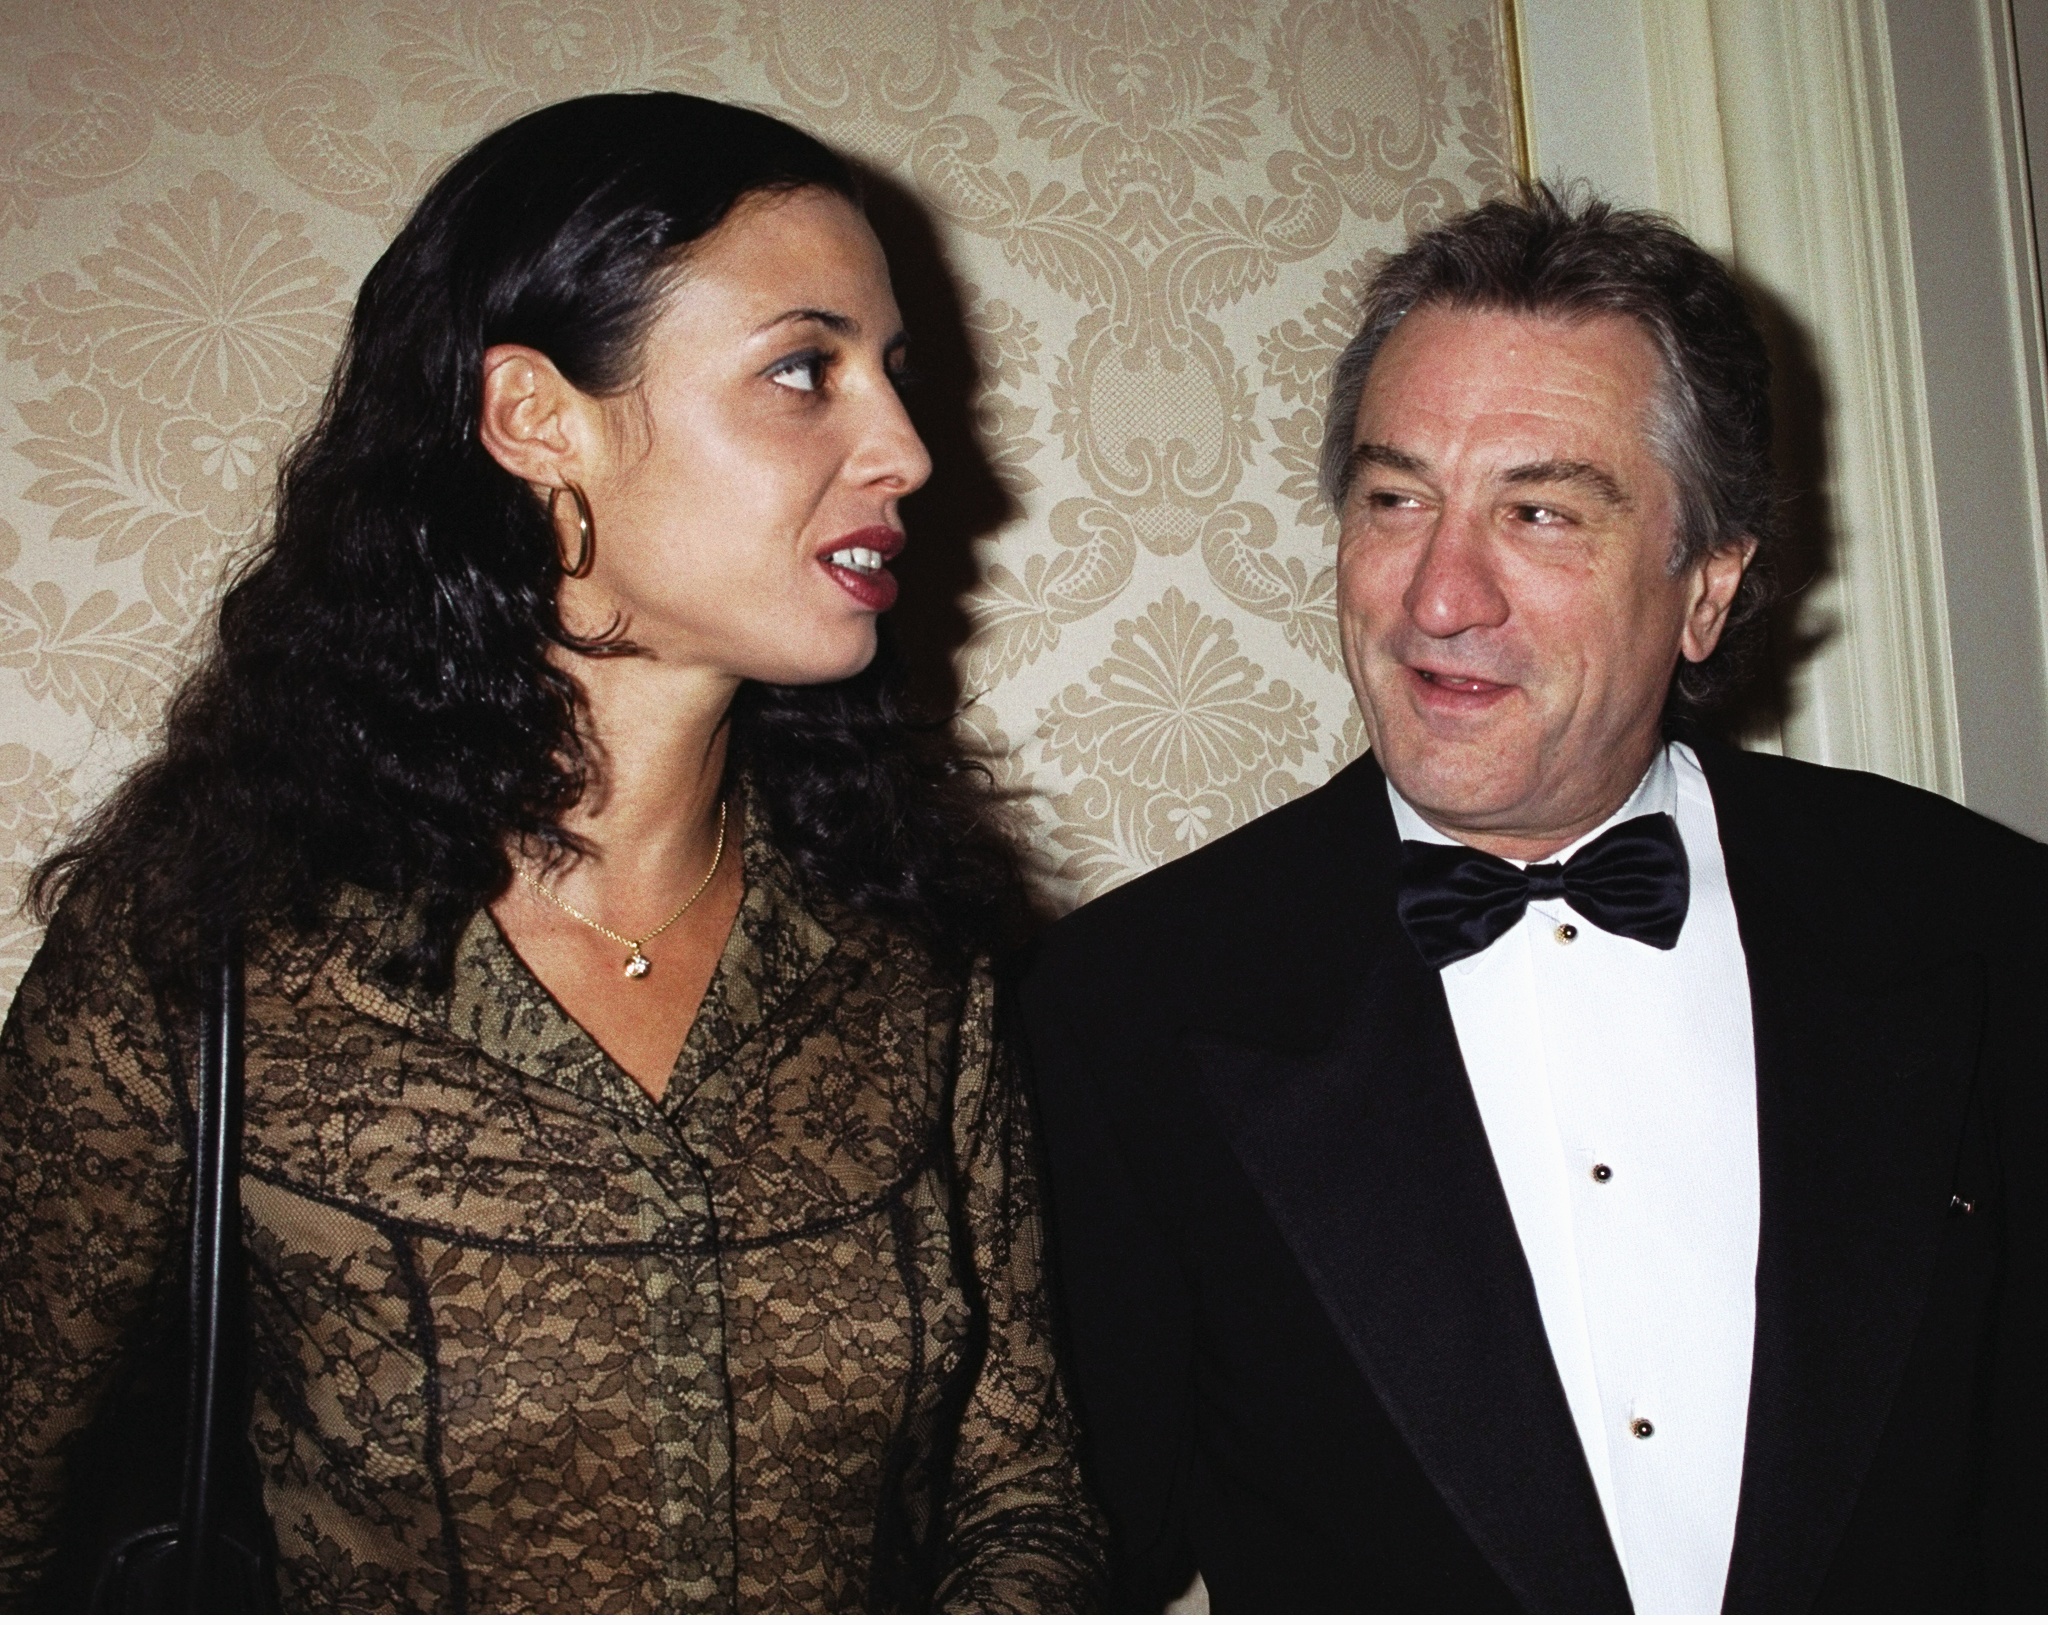 Robert De Niro und Drena De Niro im St. Regis Hotel im Jahr 2000 | Quelle: Getty Images